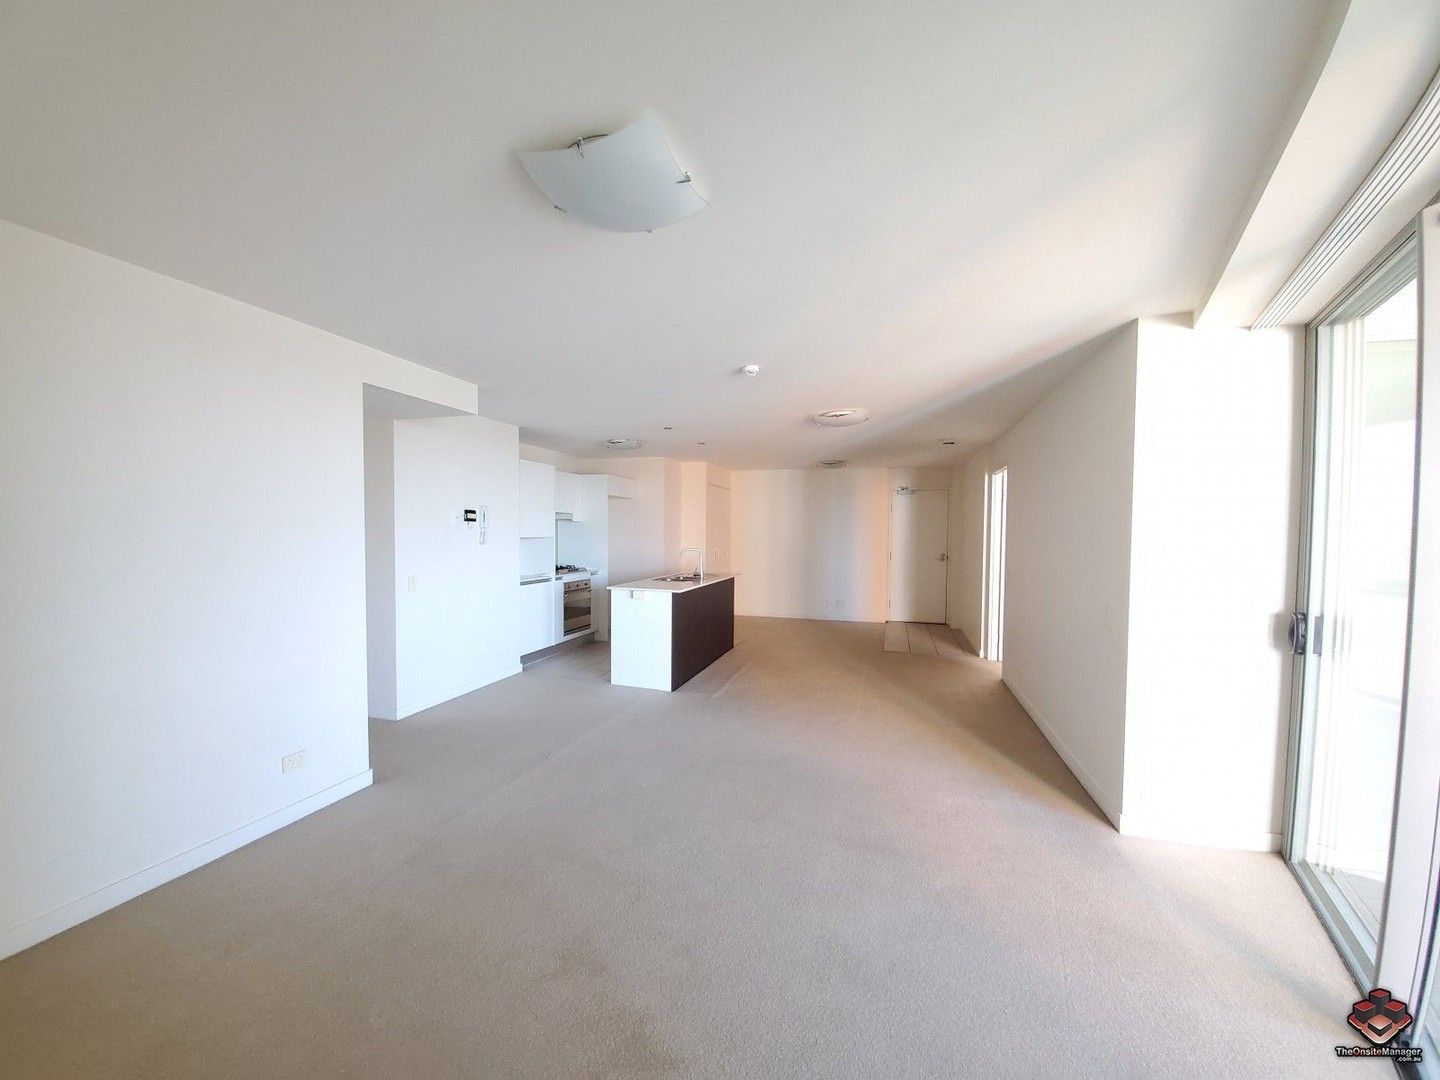 2 bedrooms Apartment / Unit / Flat in VUE 01/92-100 Quay Street BRISBANE CITY QLD, 4000